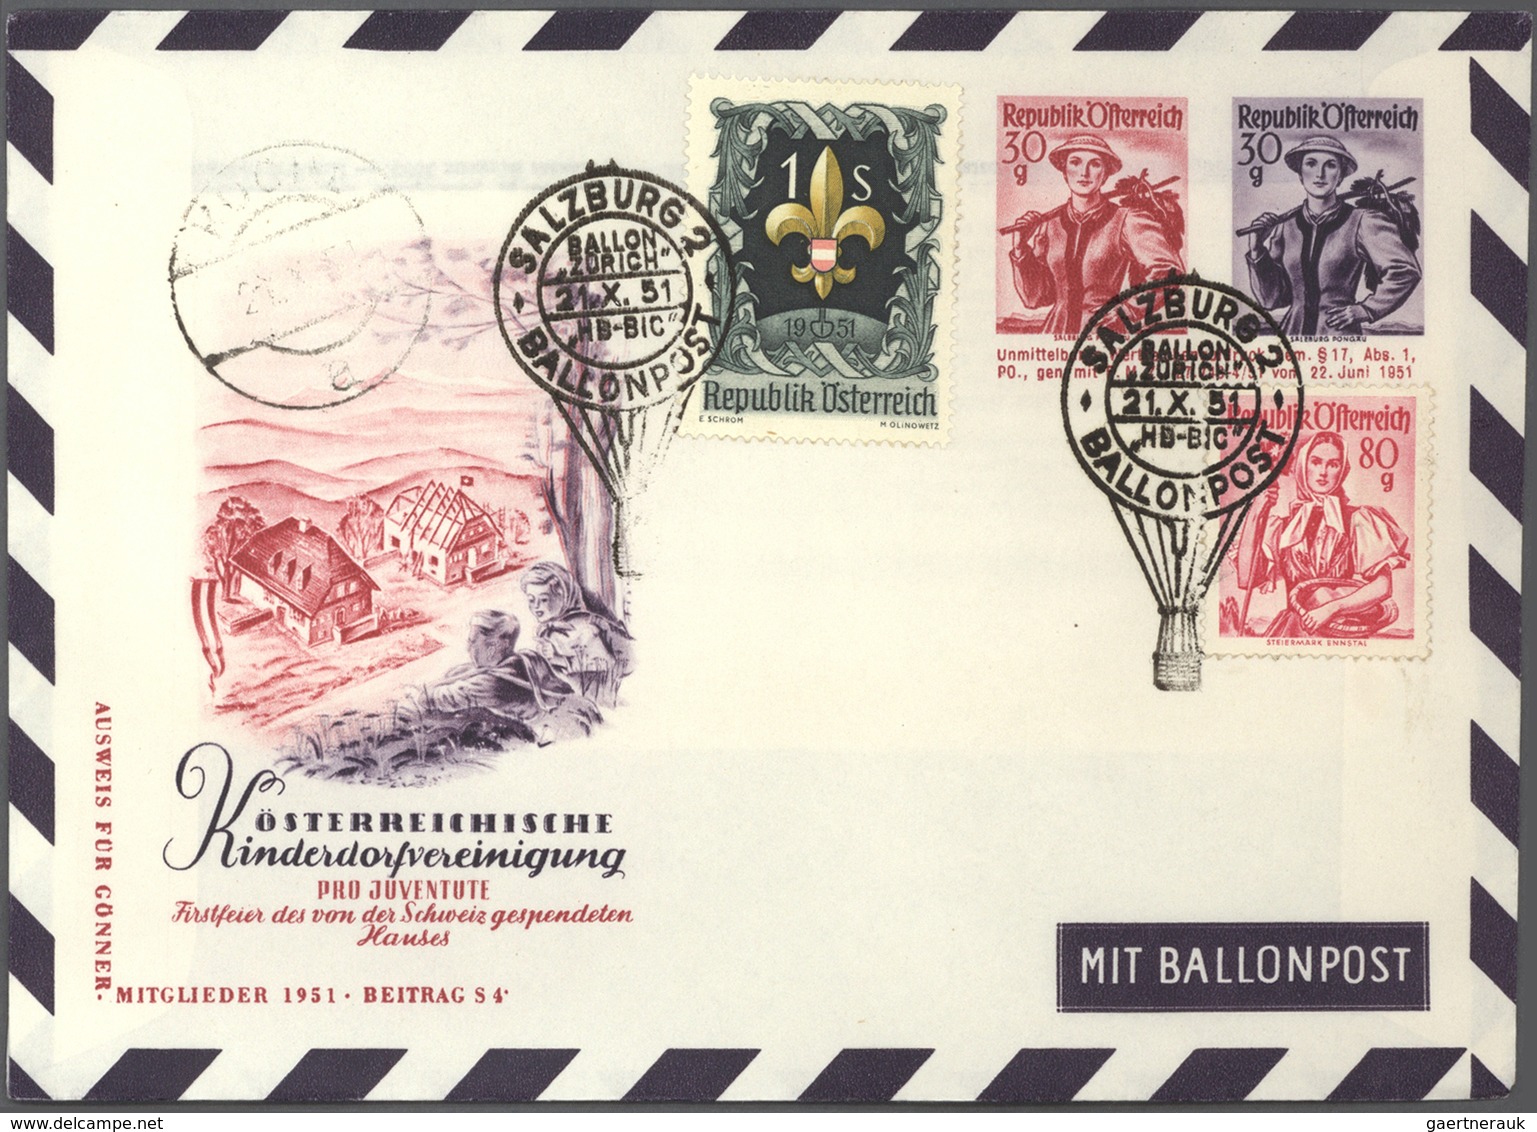 Ballonpost: ab 1950 (ca). GIGANTISCH: Der gesamte Bestand der PRO JUVENTUTE SALZBURG mit geschätzt 3